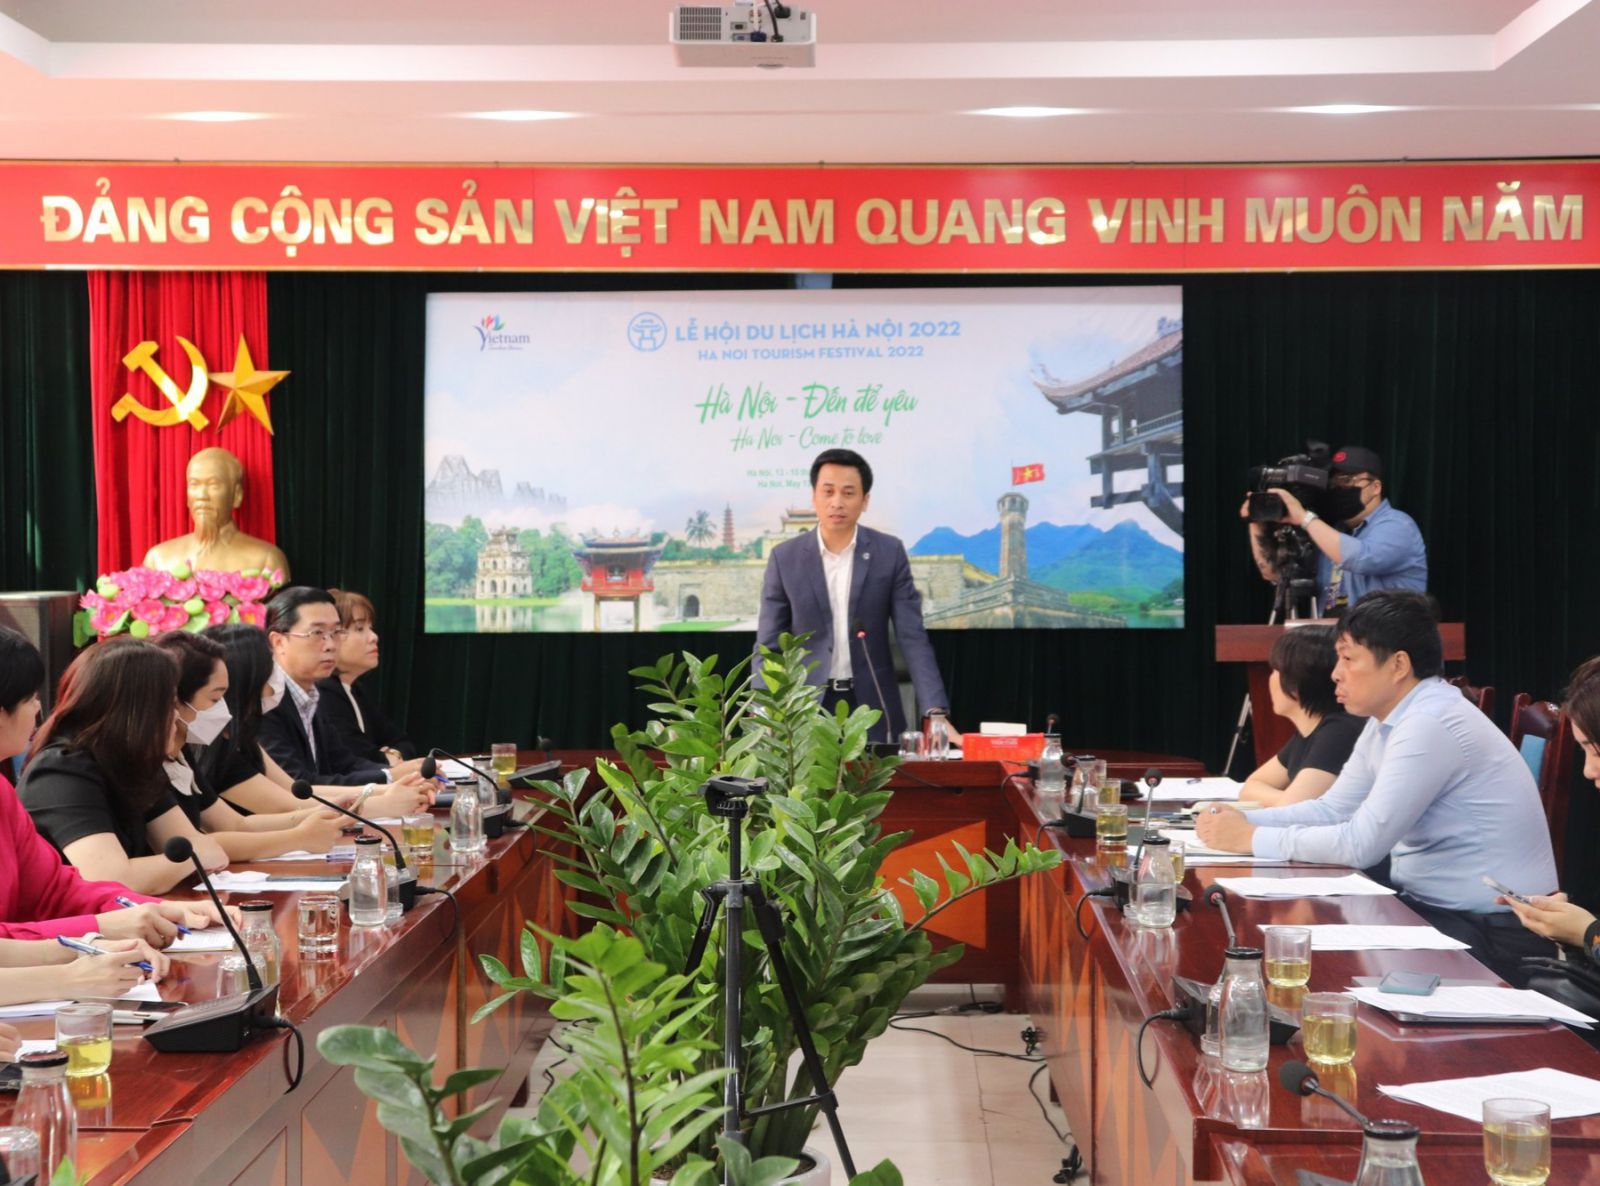 Ông Nguyễn Ánh Dương, Giám đốc Trung tâm xúc tiến Đầu tư, Thương mại và Du lịch Hà Nội (HPA) tại hội nghị sáng 6/5.